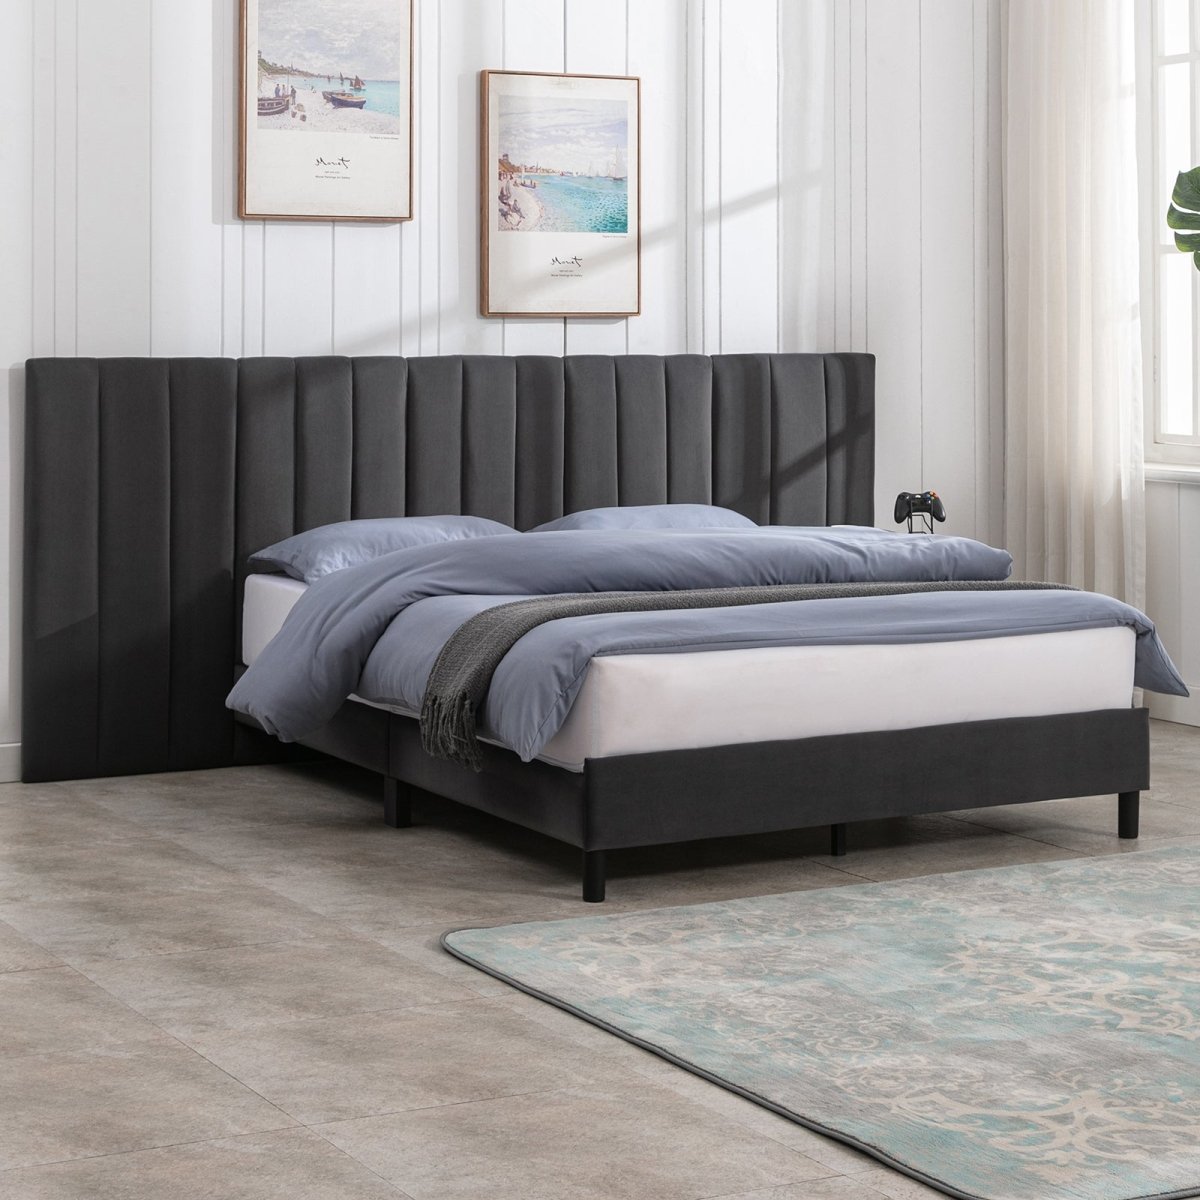 Bed Frame | Velvet Eastern Tufted Upholstered Platform Bed with Luxurious Headboard - Mjkonebed frame